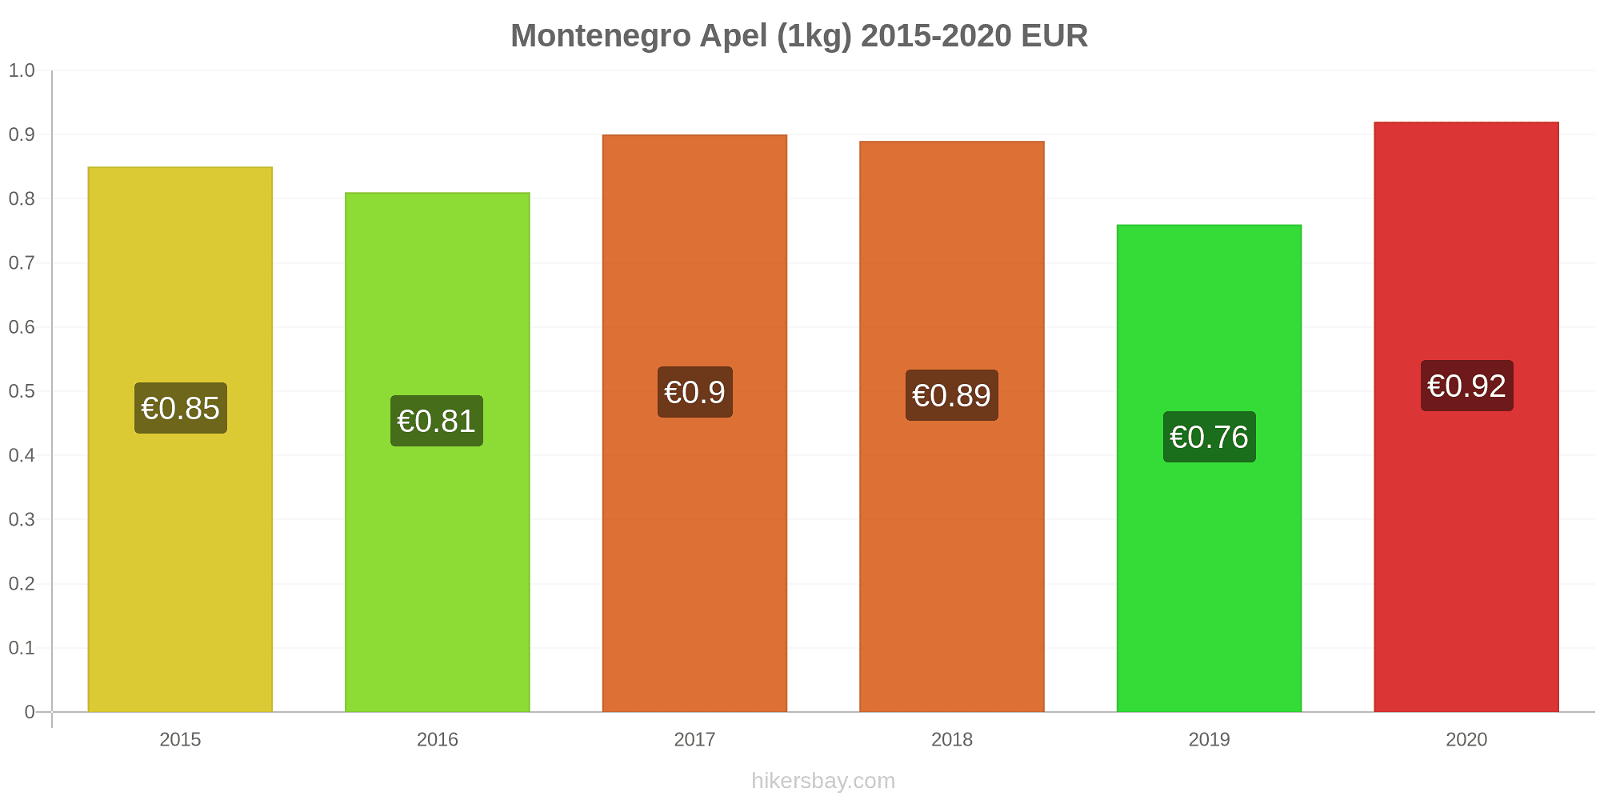 Montenegro perubahan harga Apel (1kg) hikersbay.com